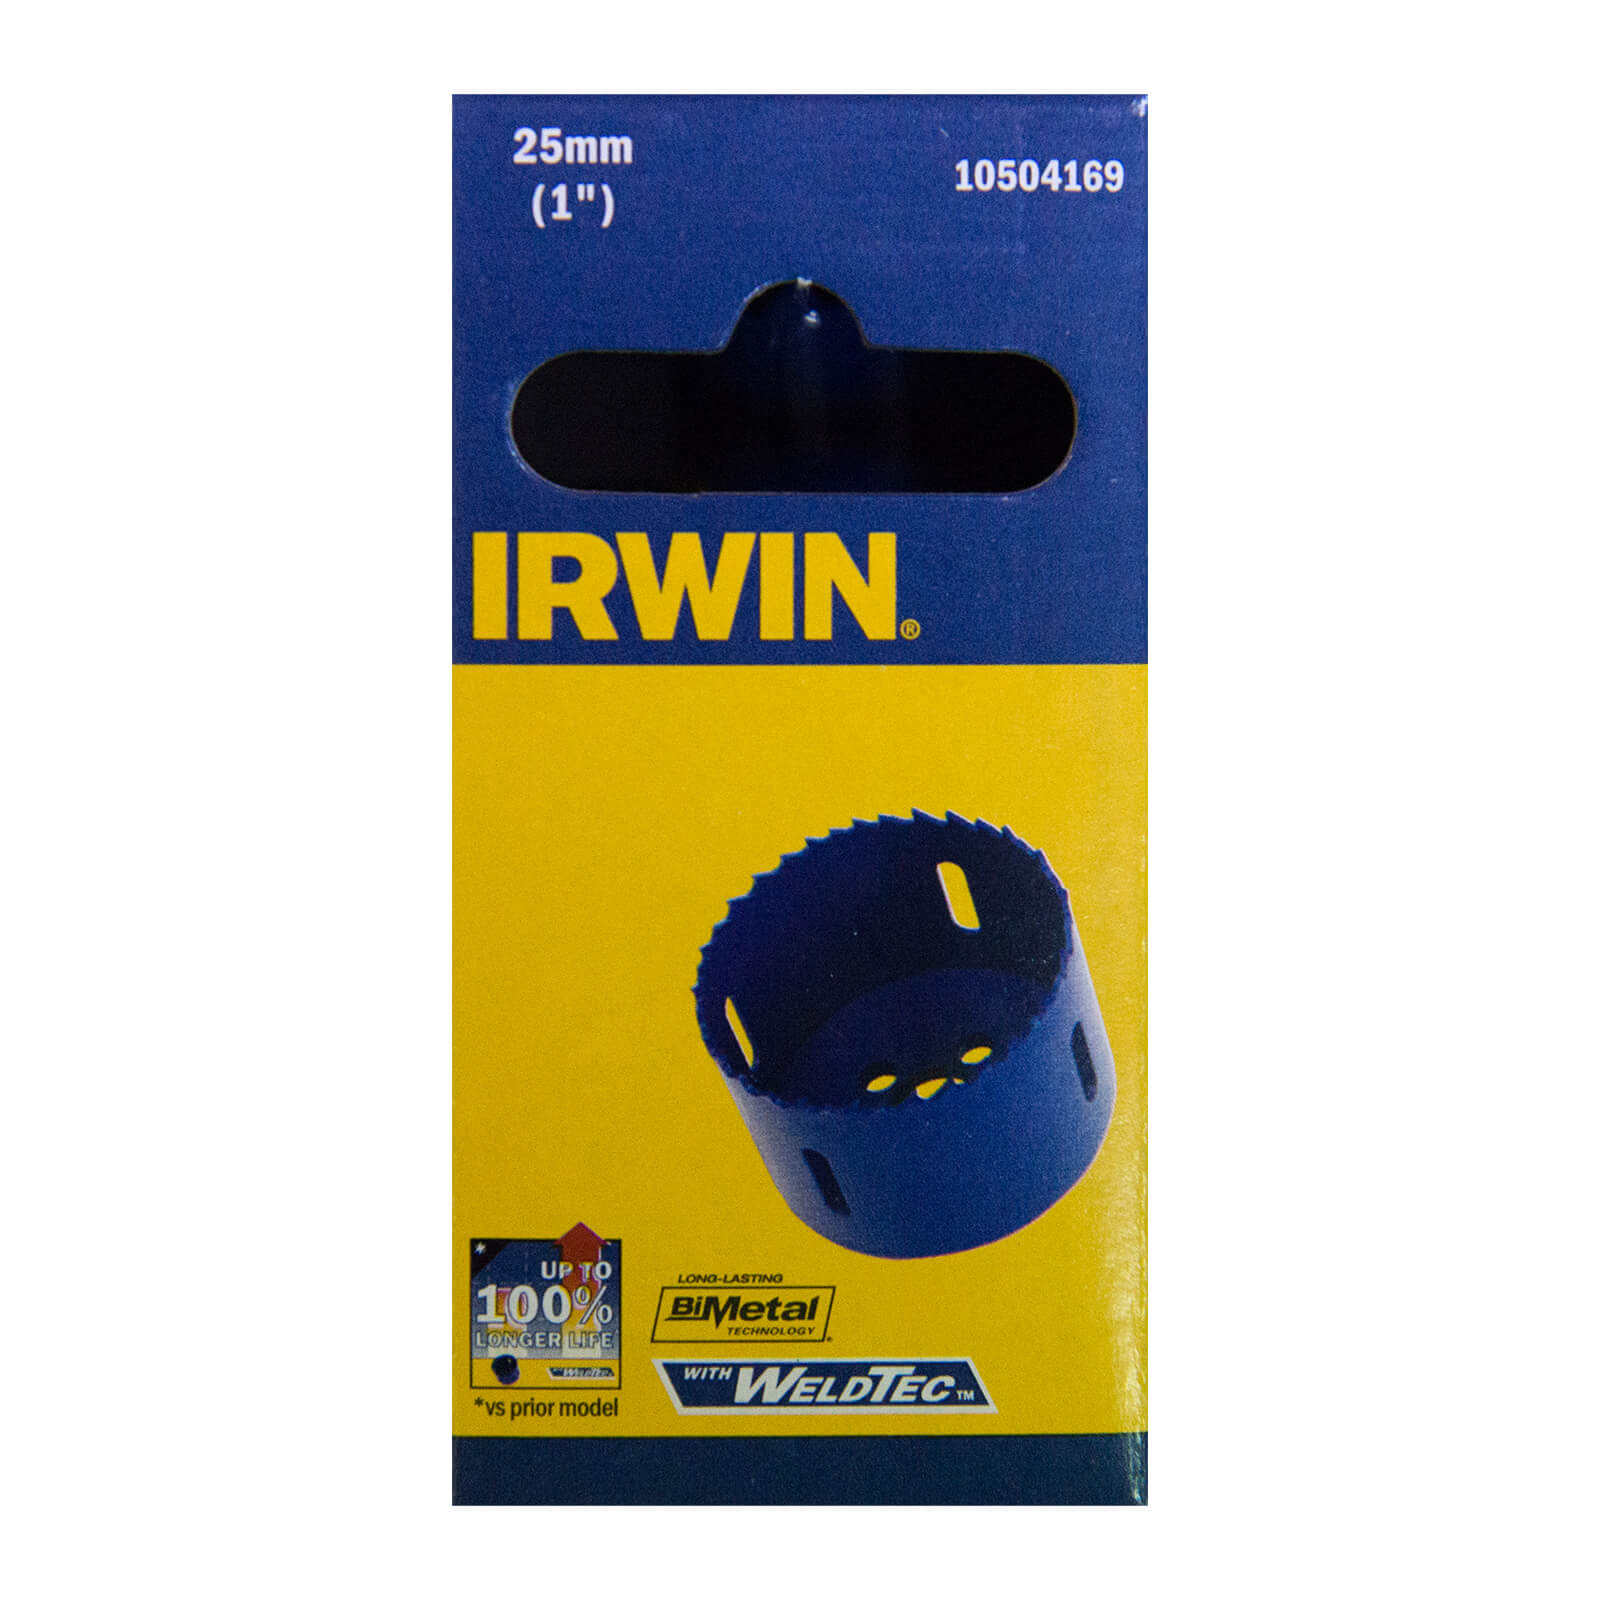 IRWIN Bi-Metal Hole Saw - 25mm